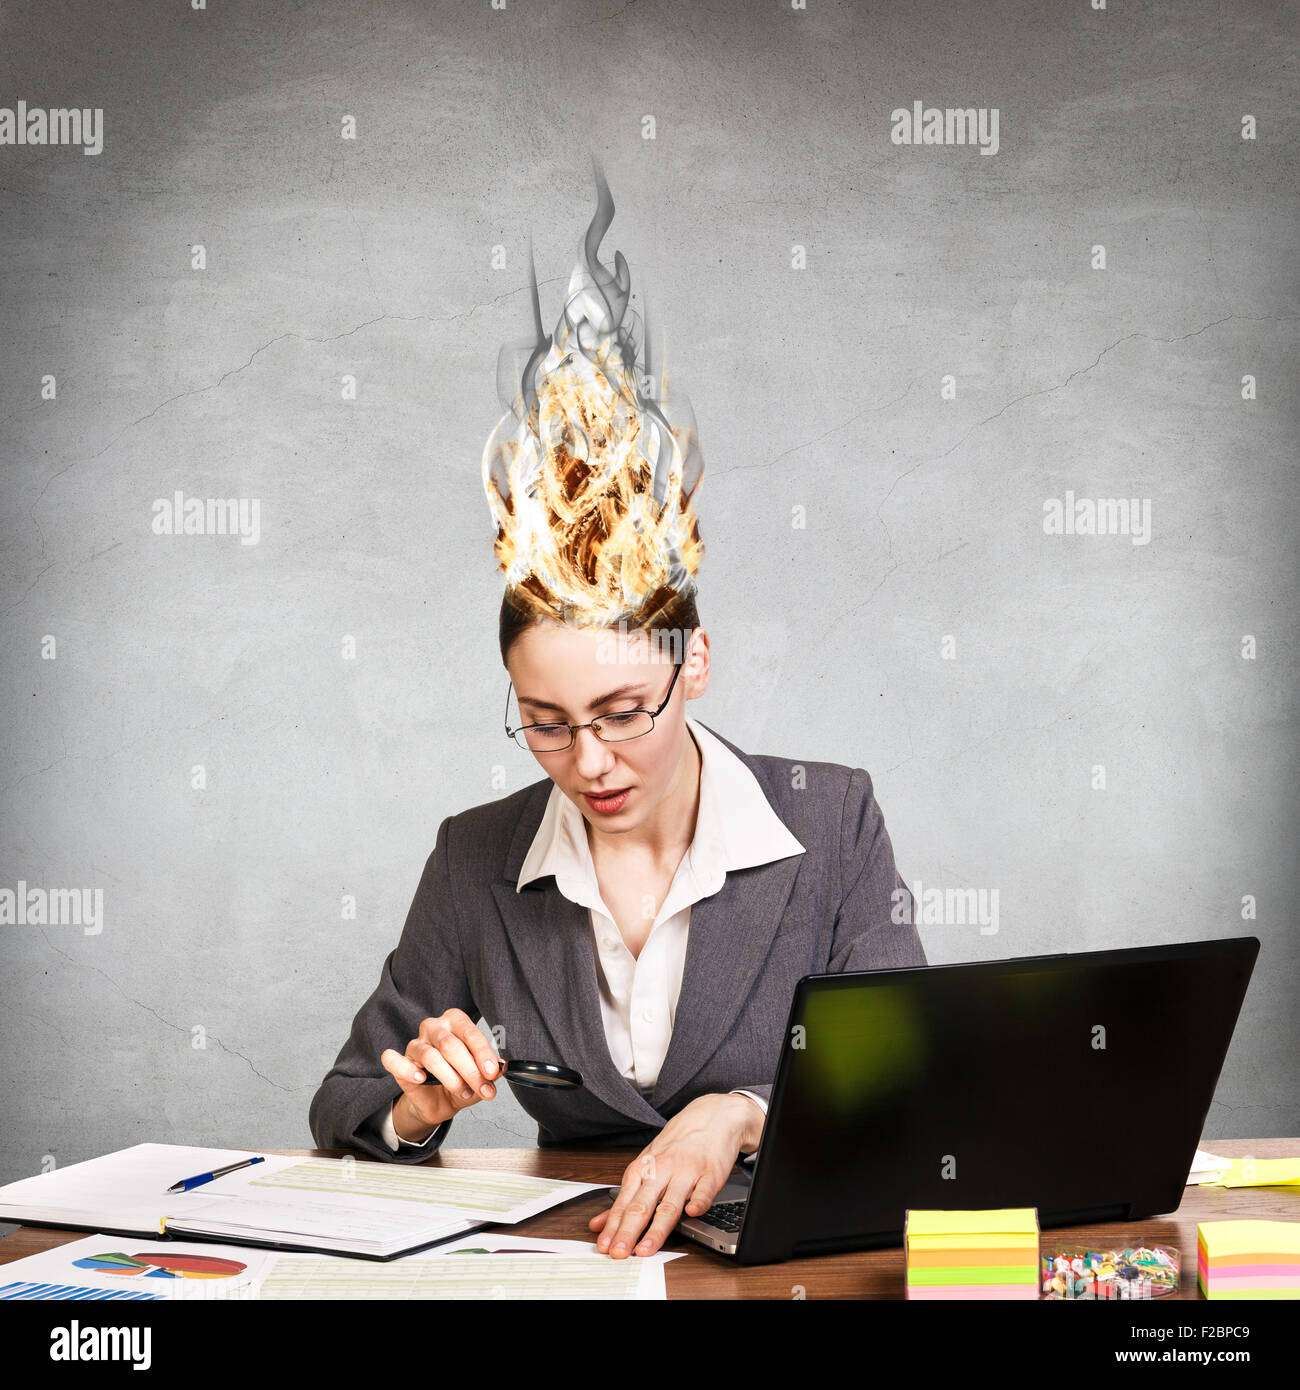 Femme qui a son cerveau en feu à cause du stress sur un fond gris Banque D'Images